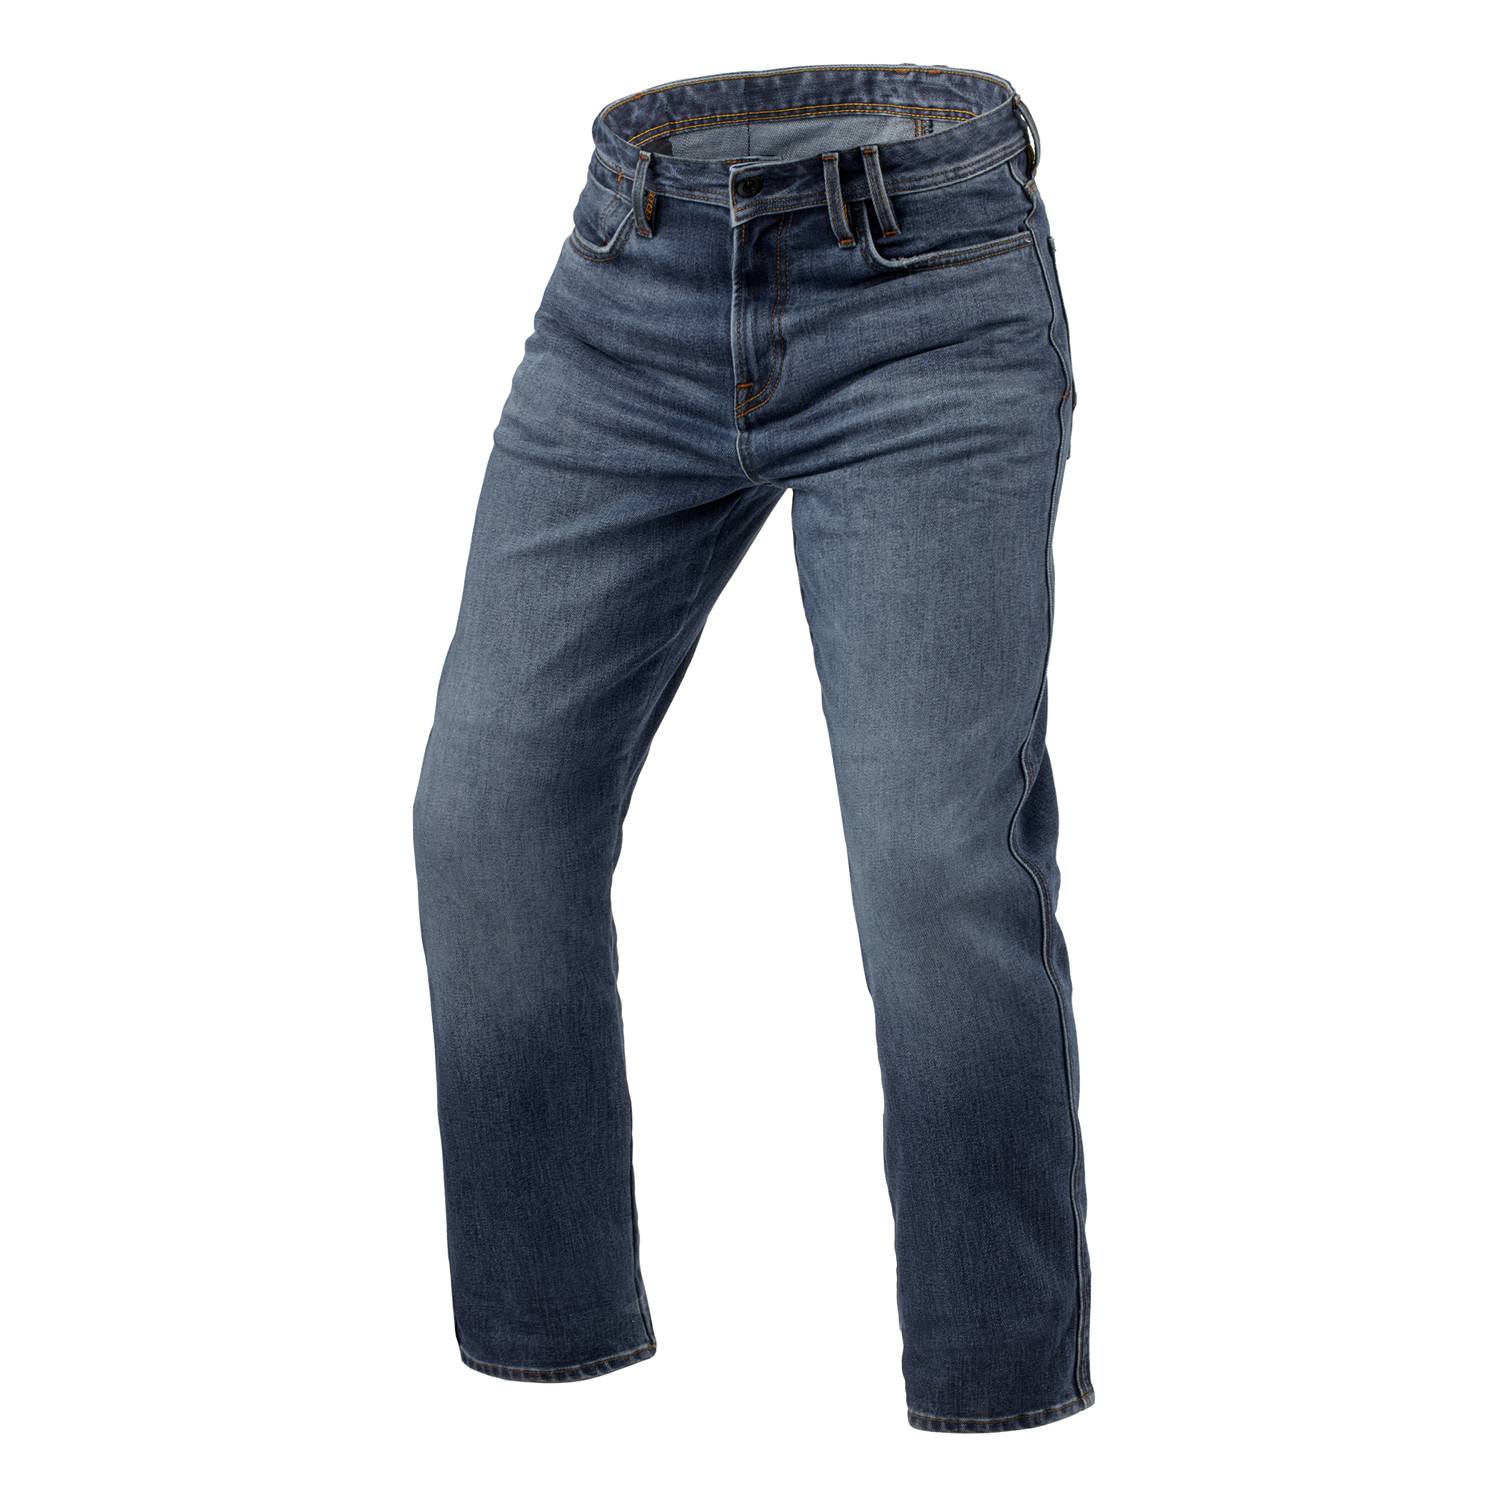 Image of REV'IT! Jeans Lombard 3 RF Medium Blue Stone L36 Motorcycle Jeans Size L36/W33 EN